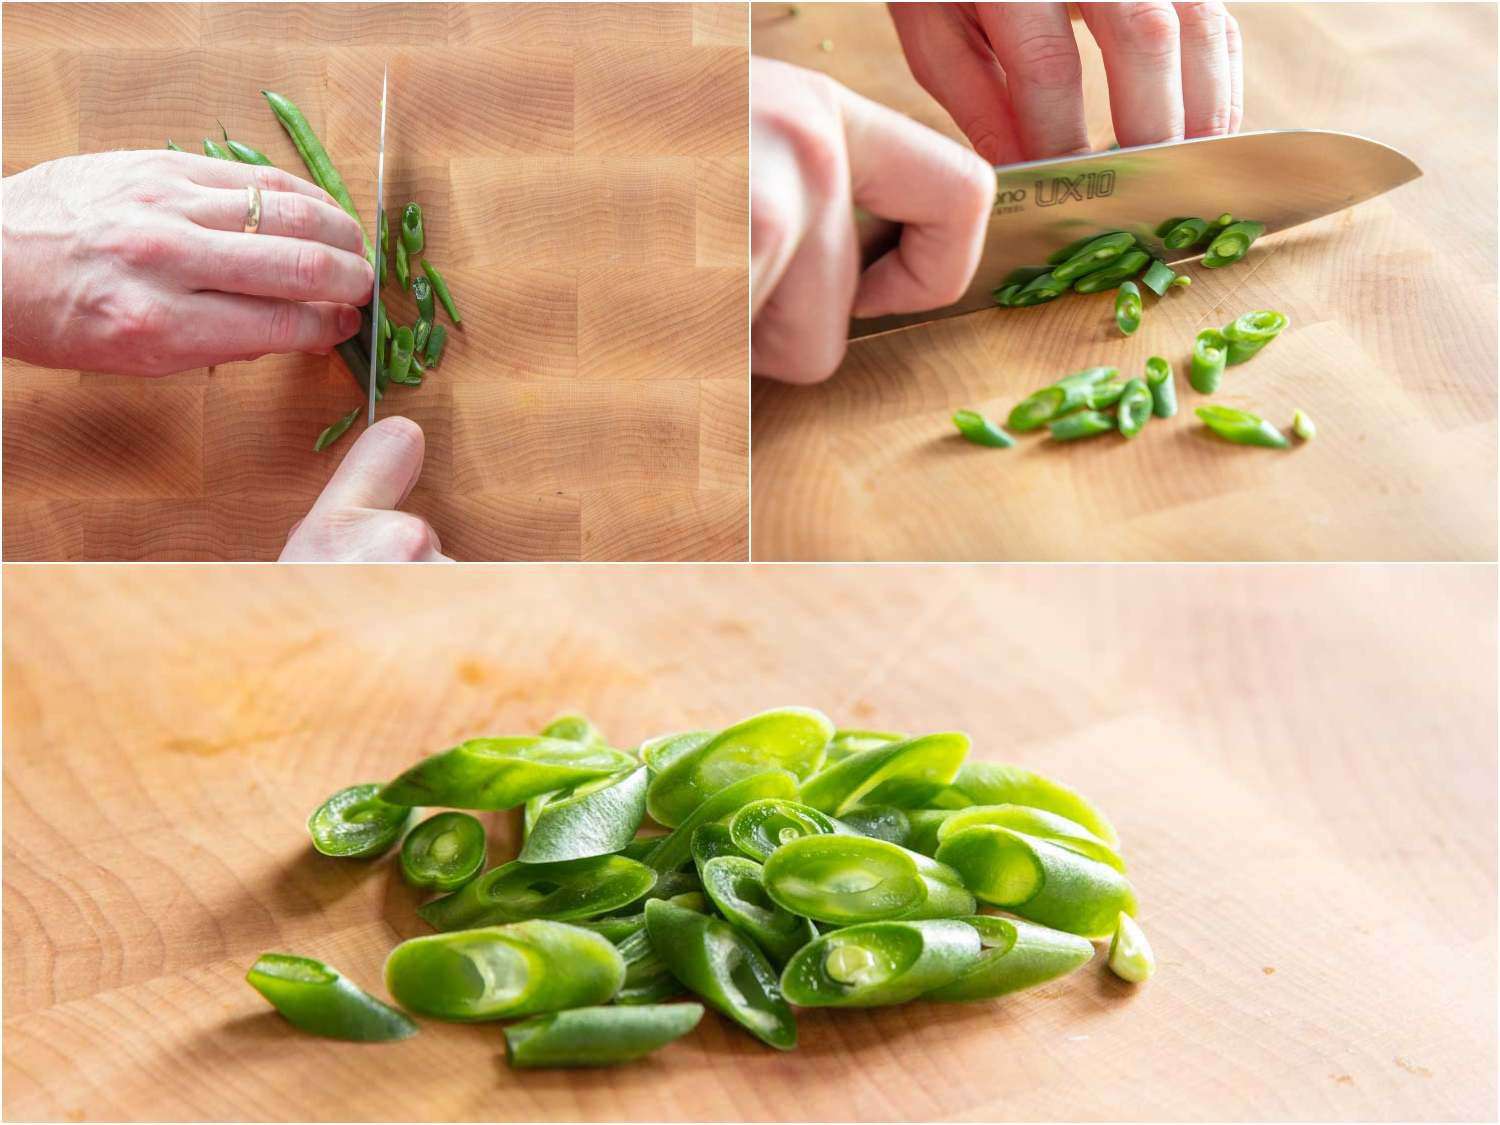 切生青豆的拼贴照片陡峭的偏见沙拉。